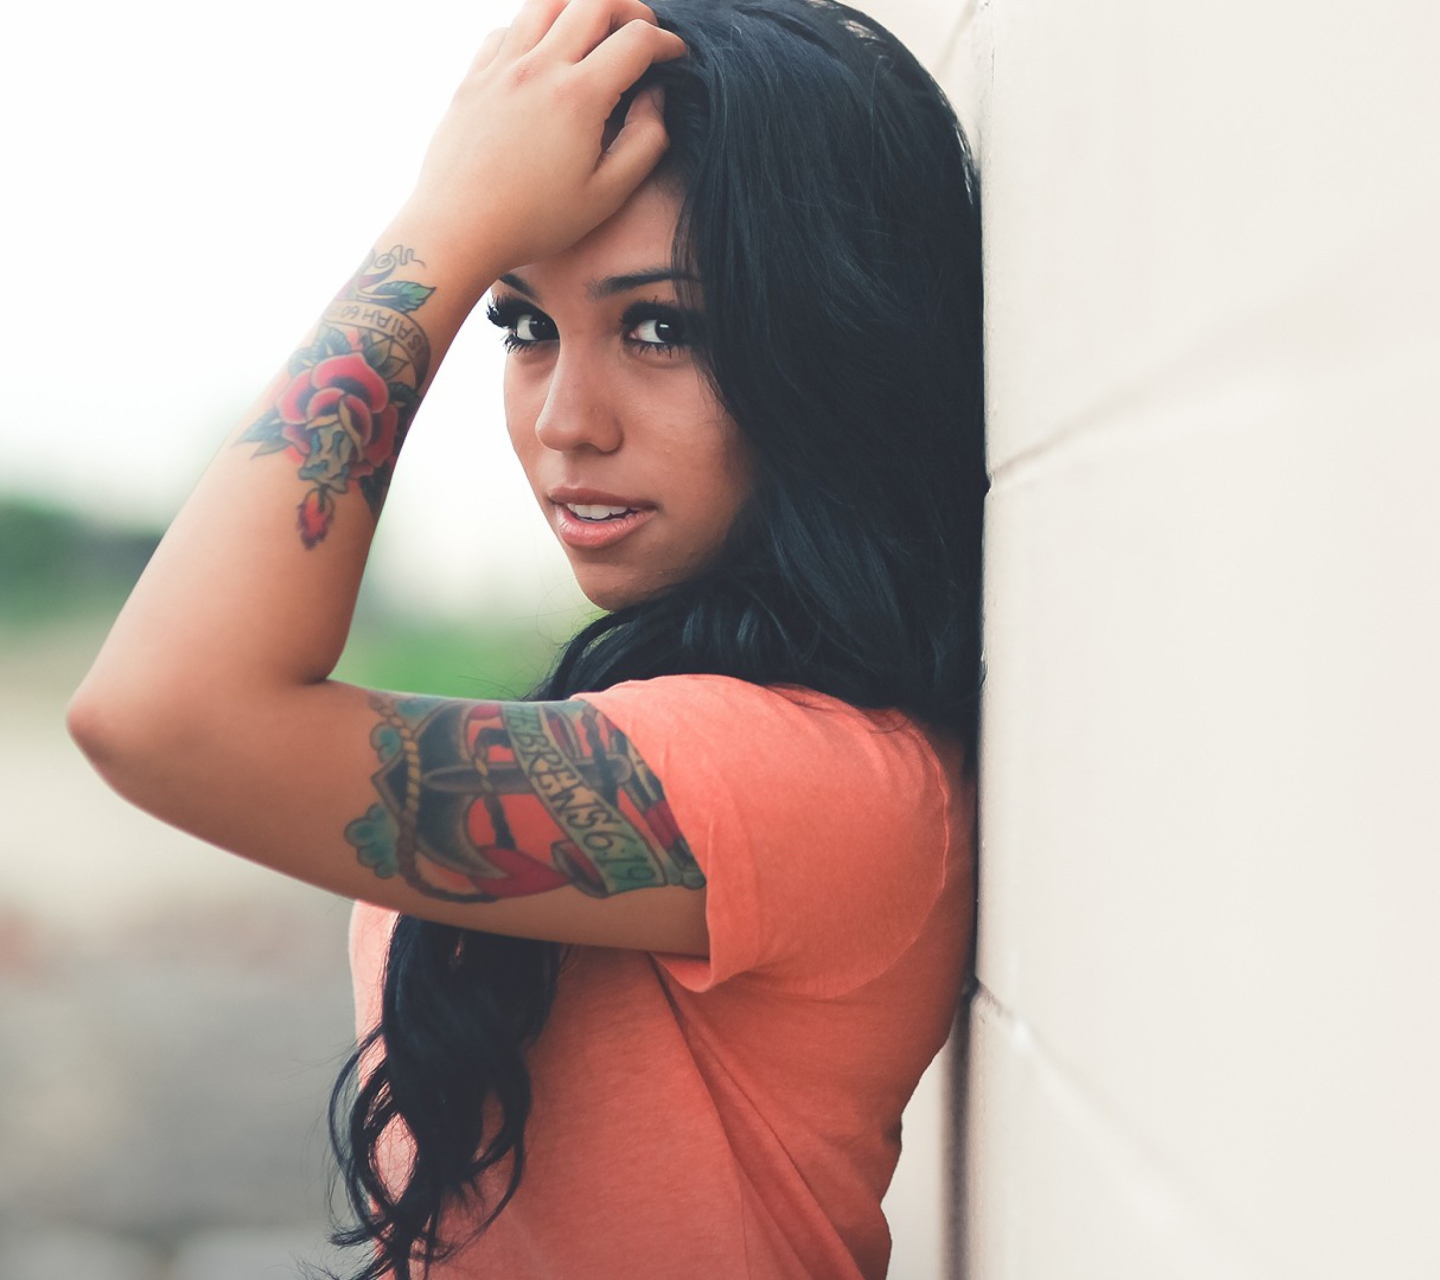 Beautiful Latin American Model With Tattoos screenshot #1 1440x1280